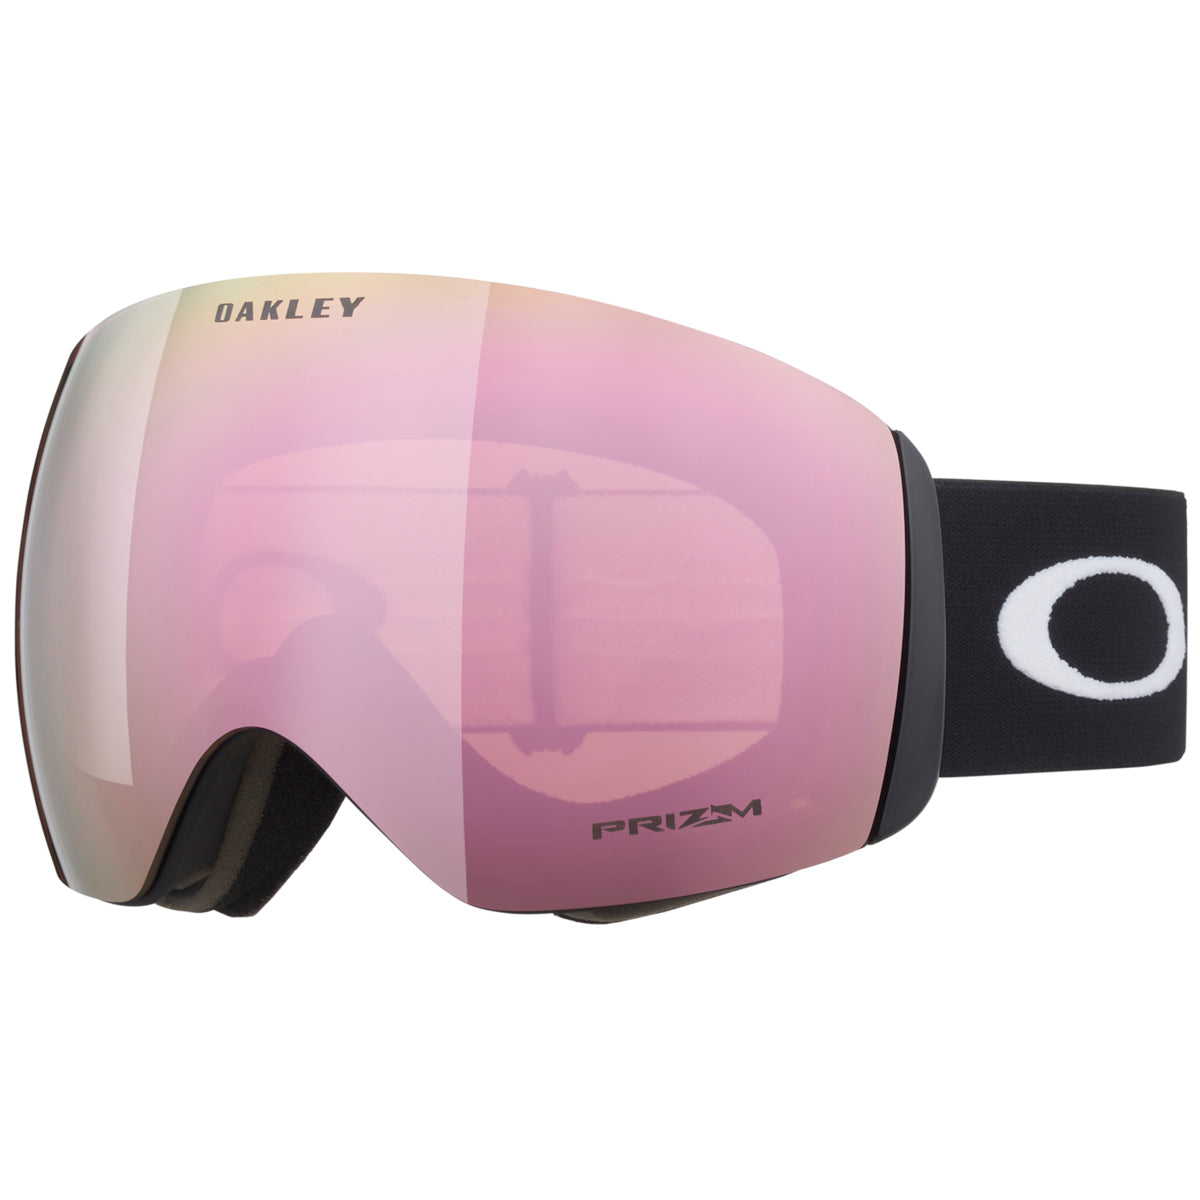 Oakley Flight Deck Snowboard Goggles - Matte Black/Prizm Rose Gold image 1